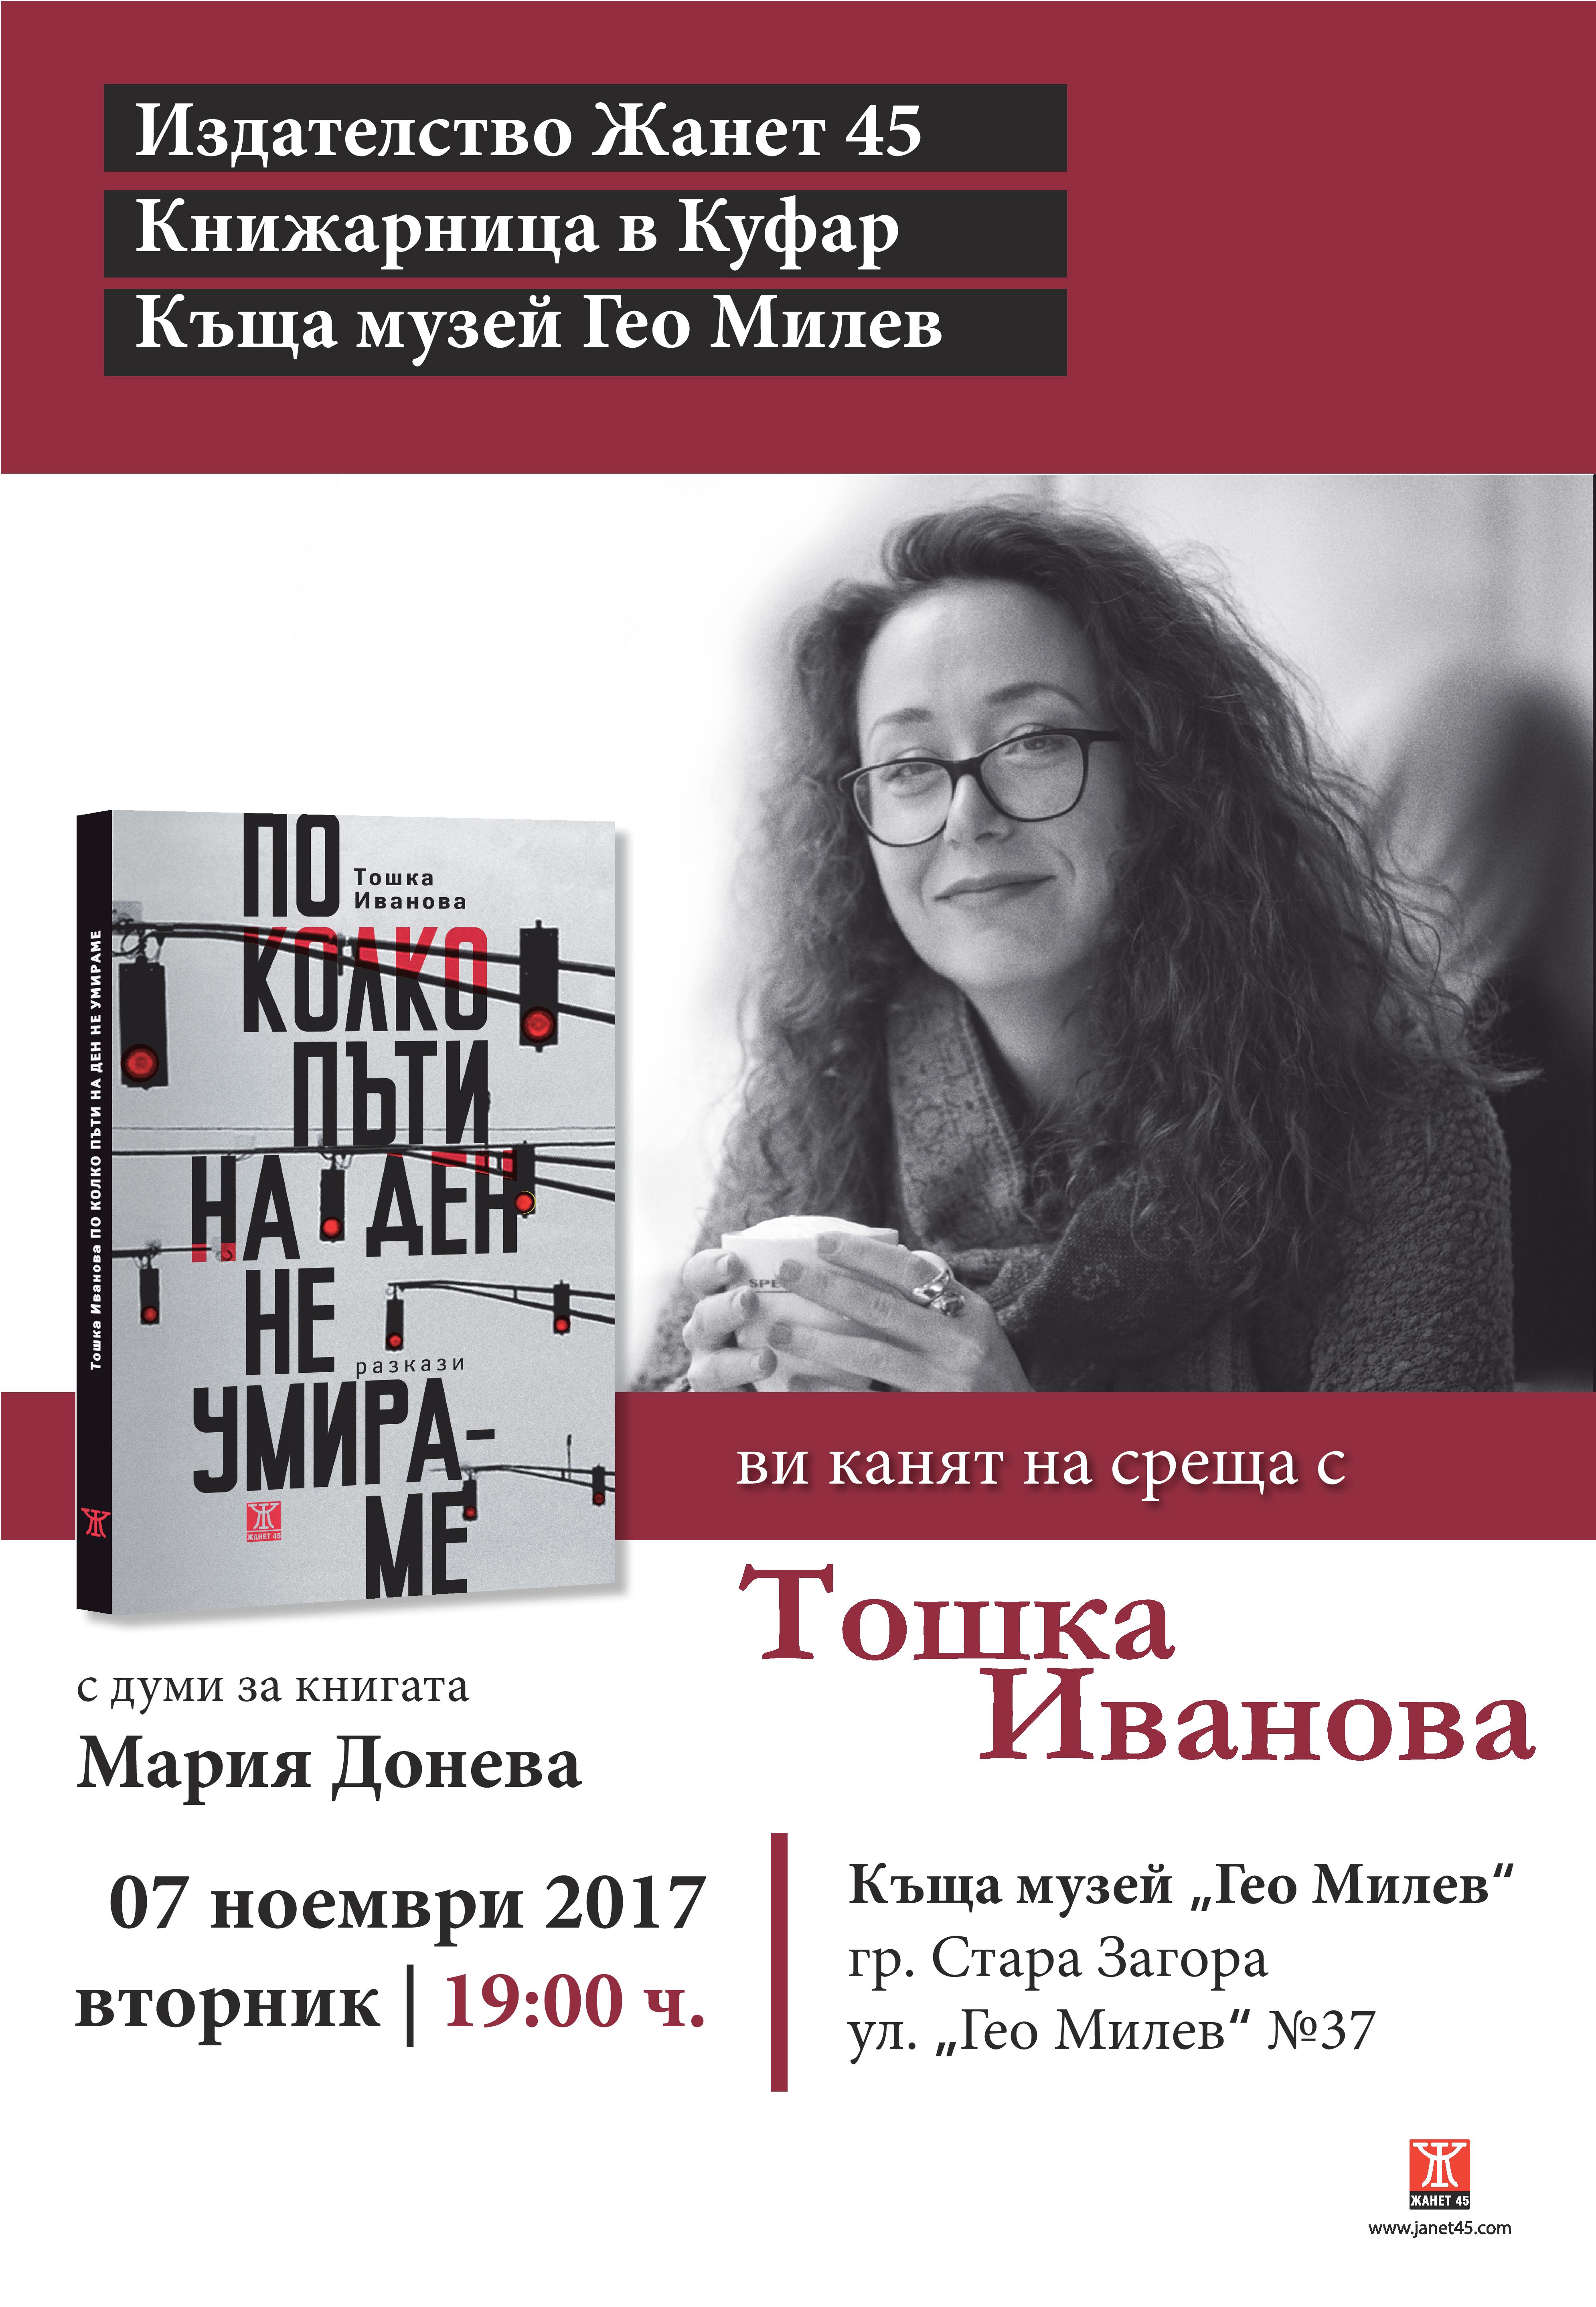 Представяне на книгата "По колко пъти на ден не умираме" от Тошка Иванова в София